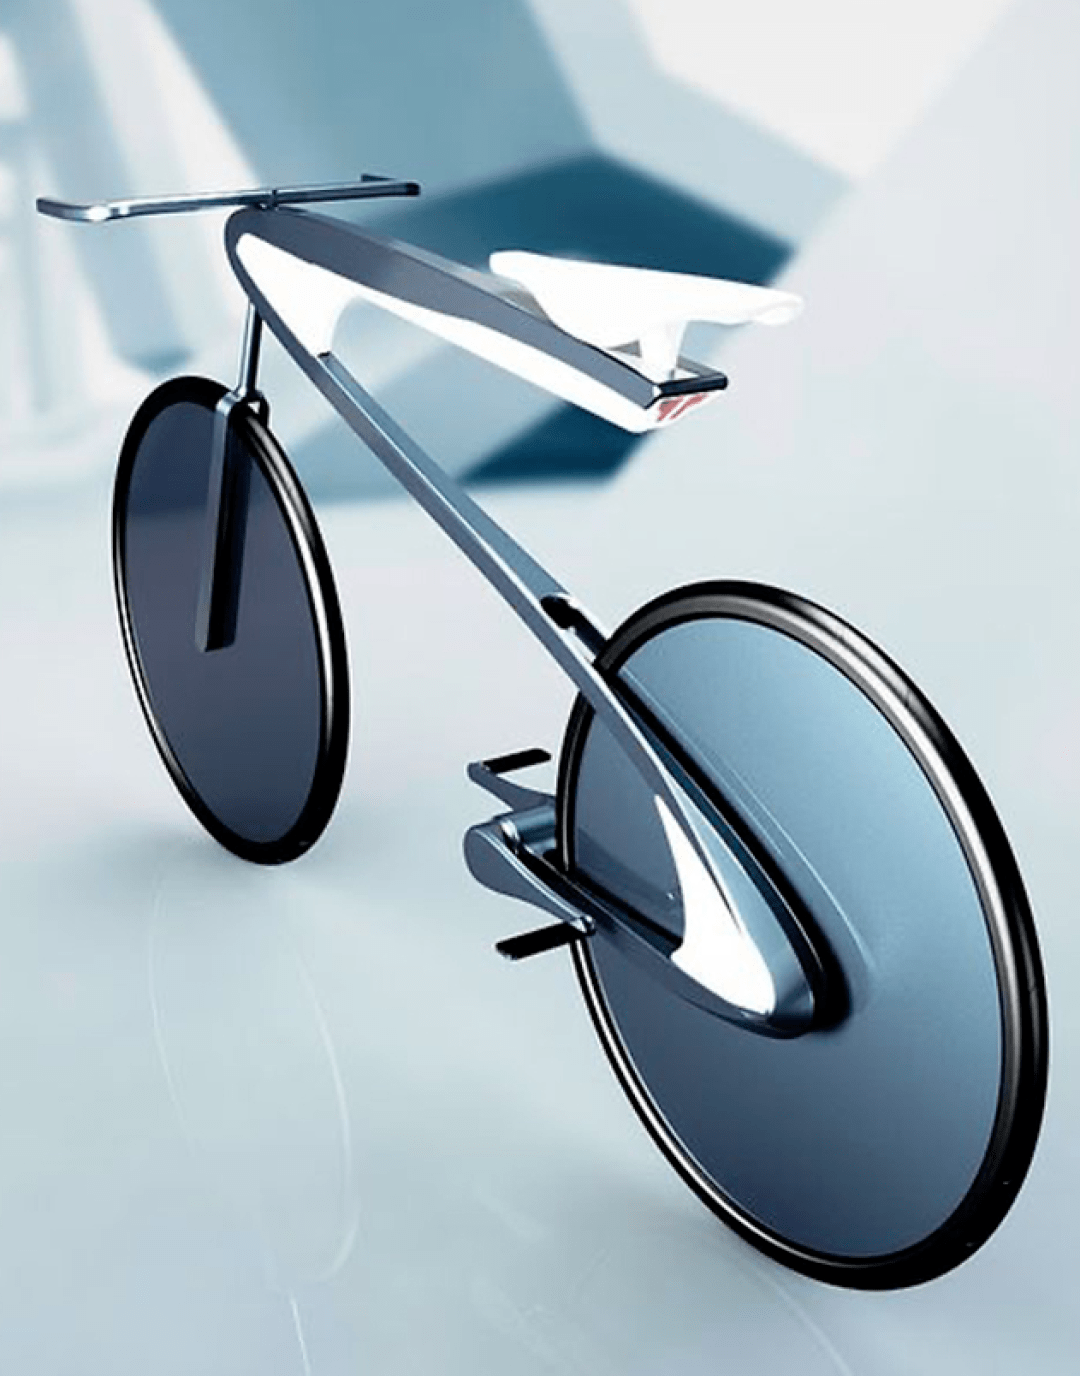 创新君觉得电动自行车设计成这样,简直比特斯拉还敢想!